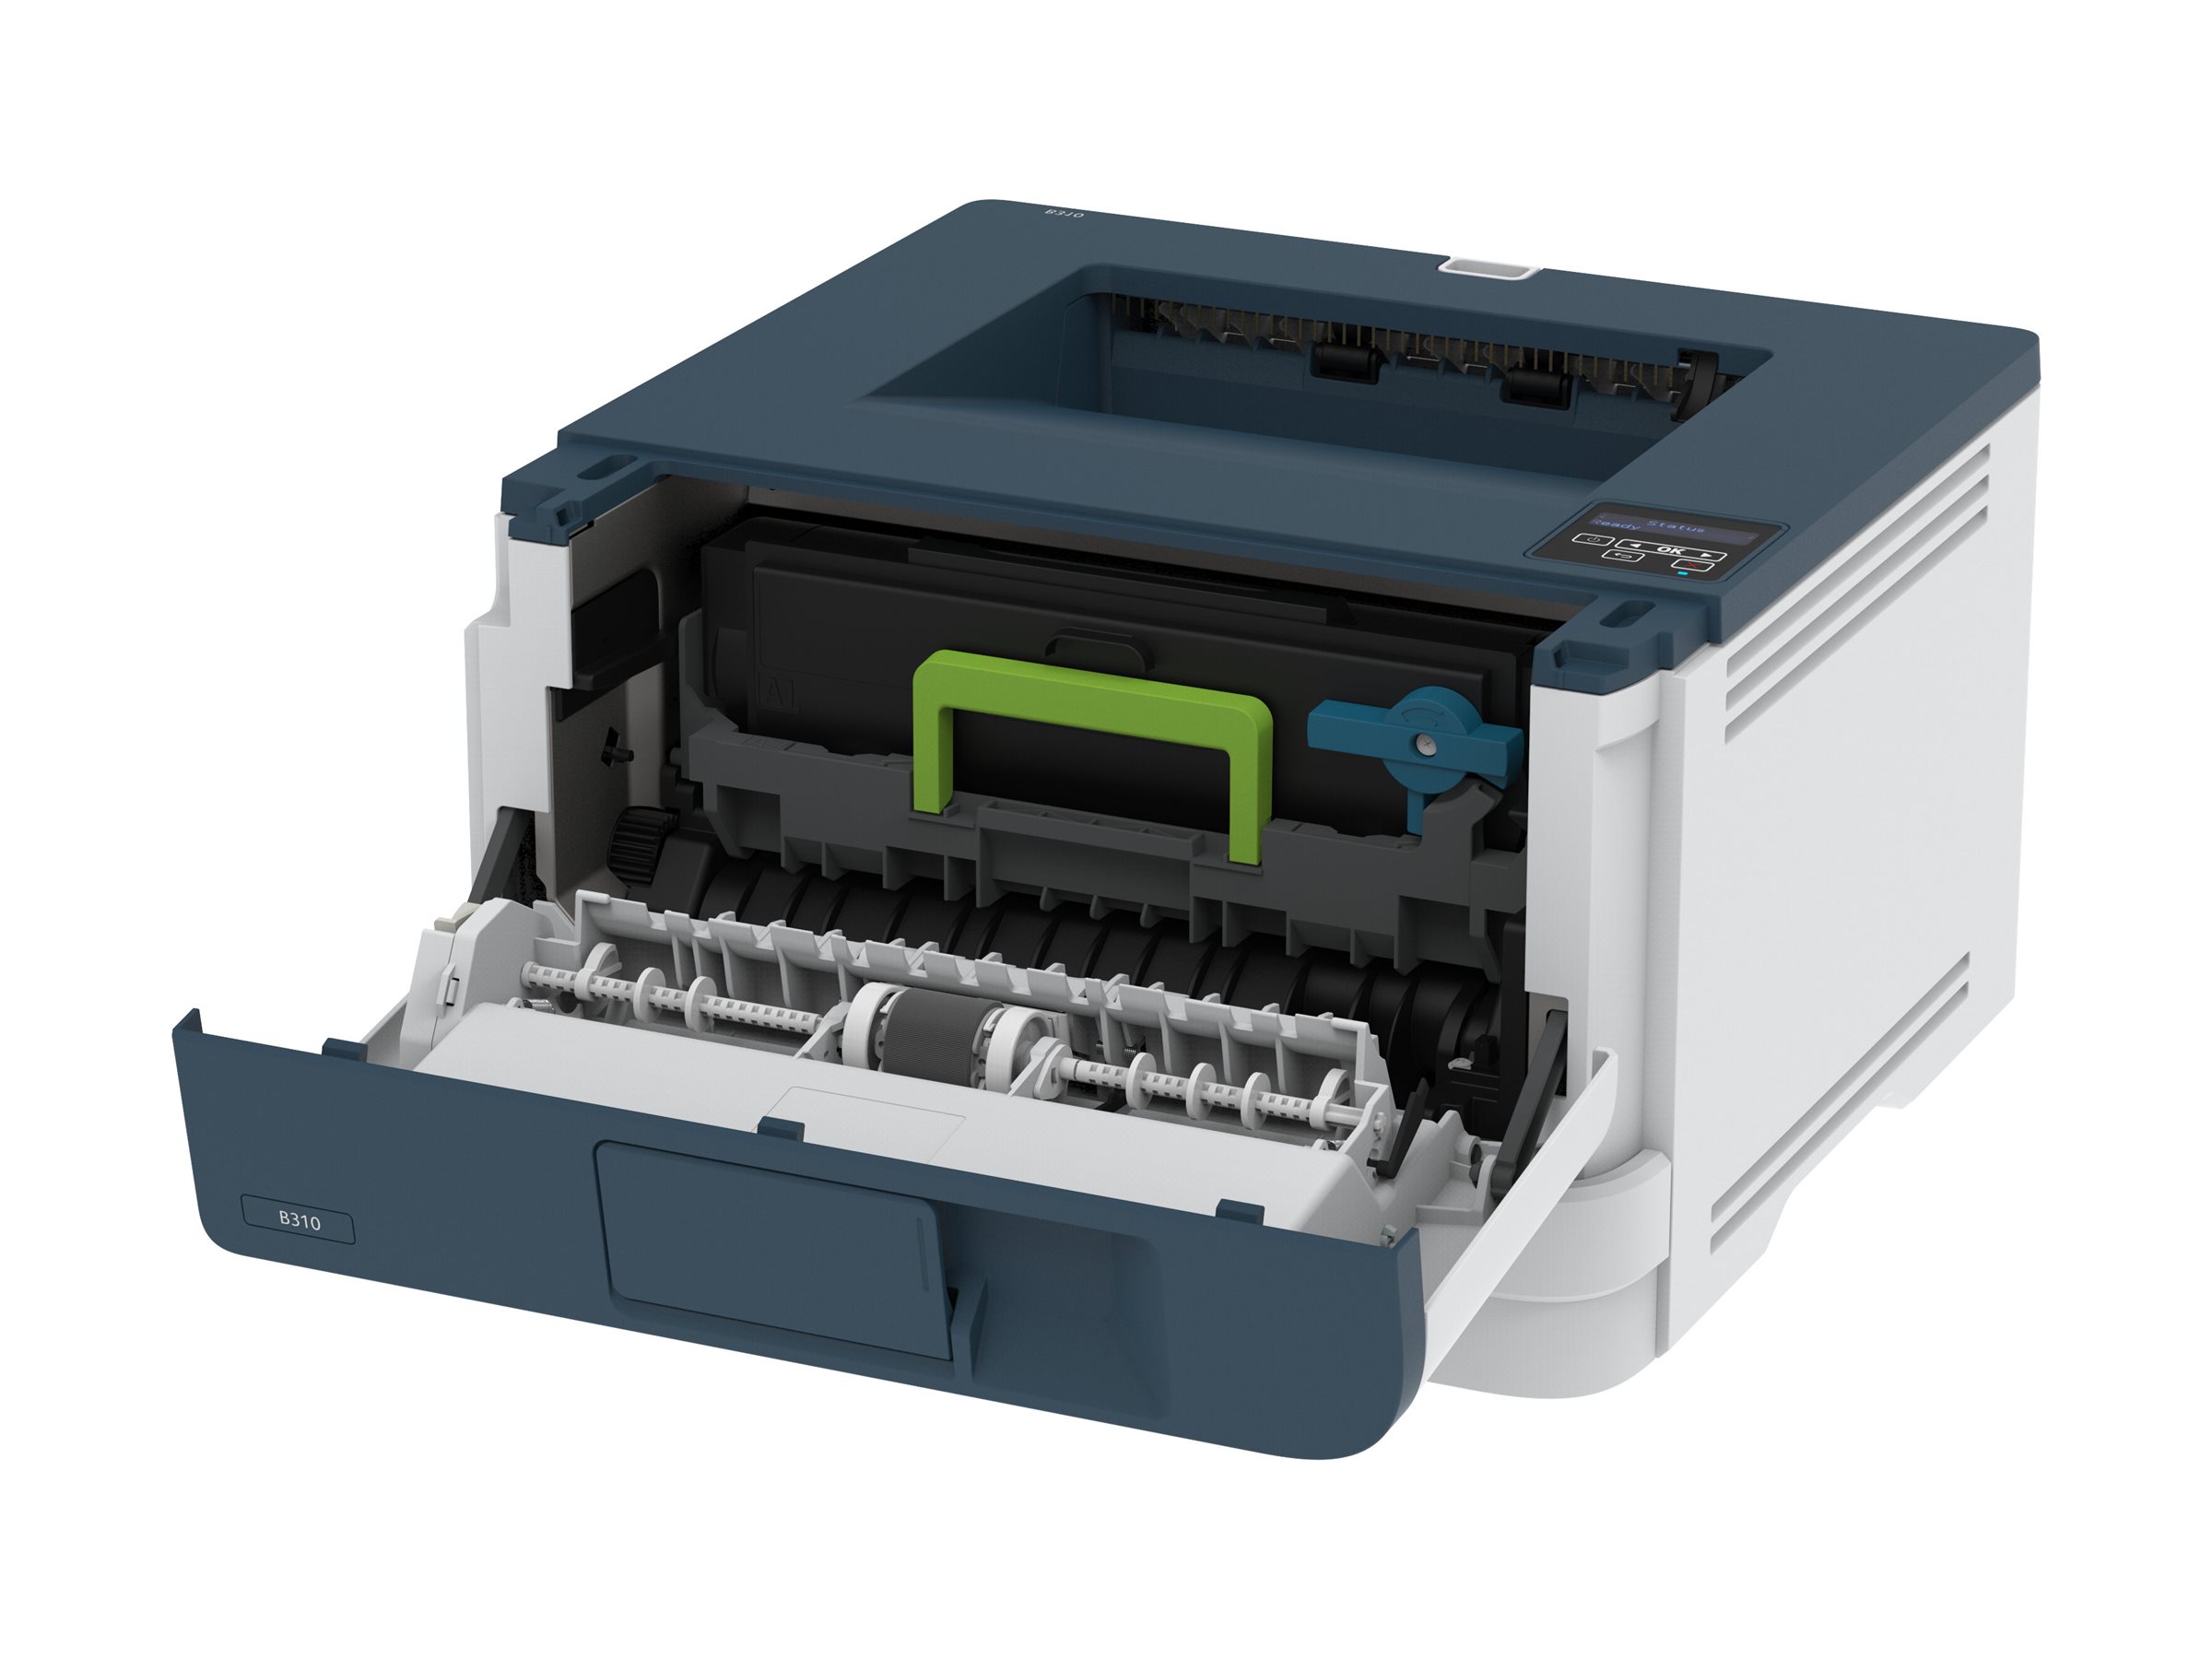 Xerox B310 - Drucker - s/w - Duplex - Laser - A4/Legal